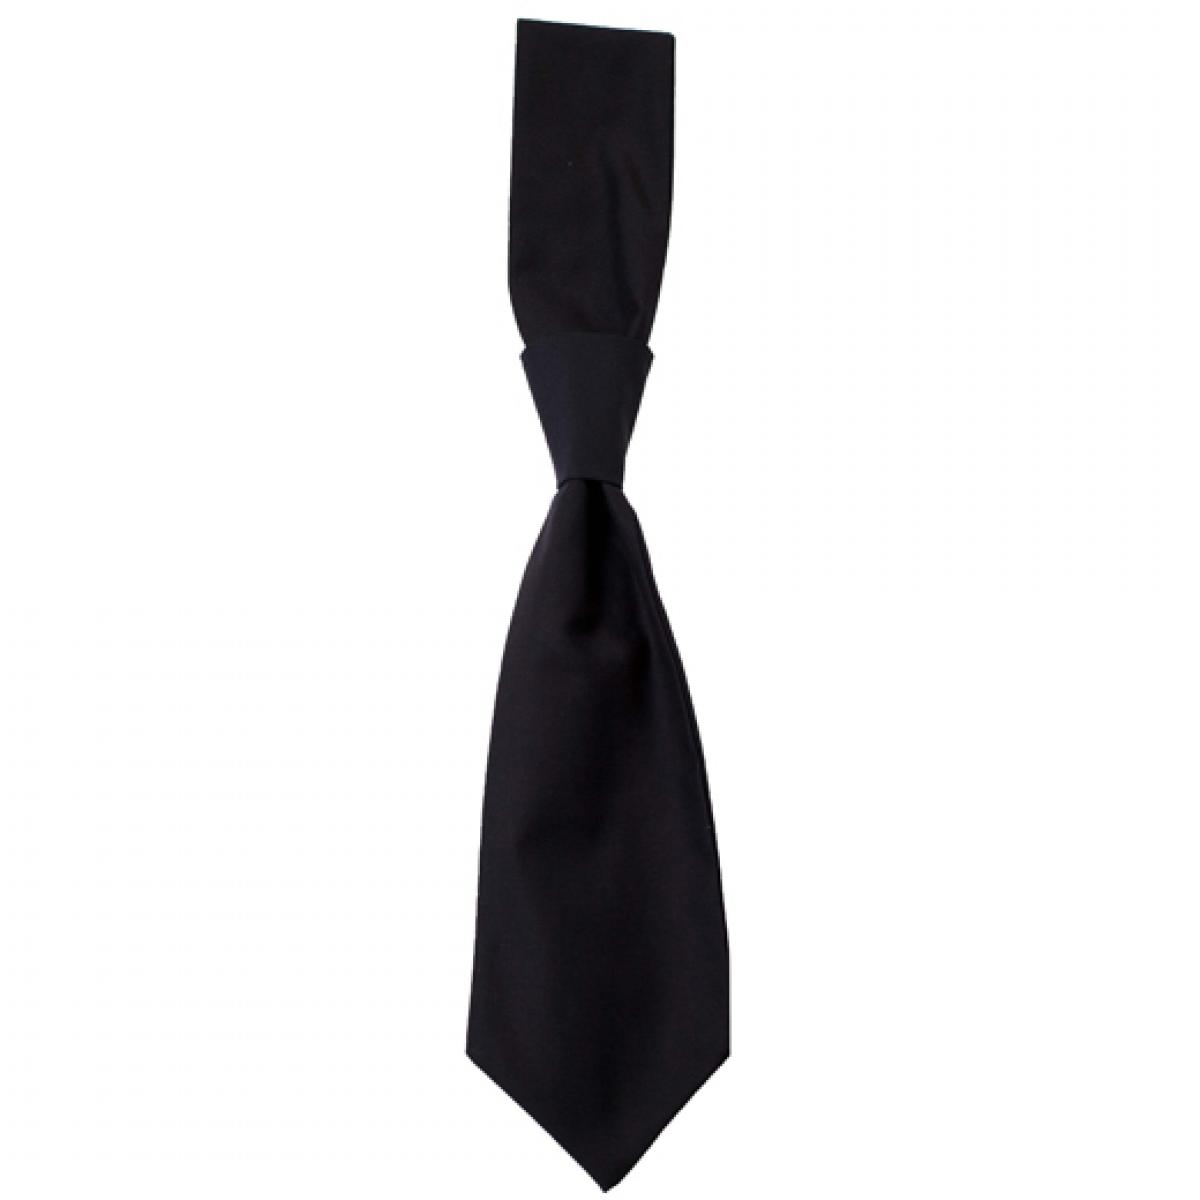 Hersteller: CG Workwear Herstellernummer: 01360-01 Artikelbezeichnung: Krawatte Messina / Zertifiziert nach Oeko-Tex 100 Farbe: Black